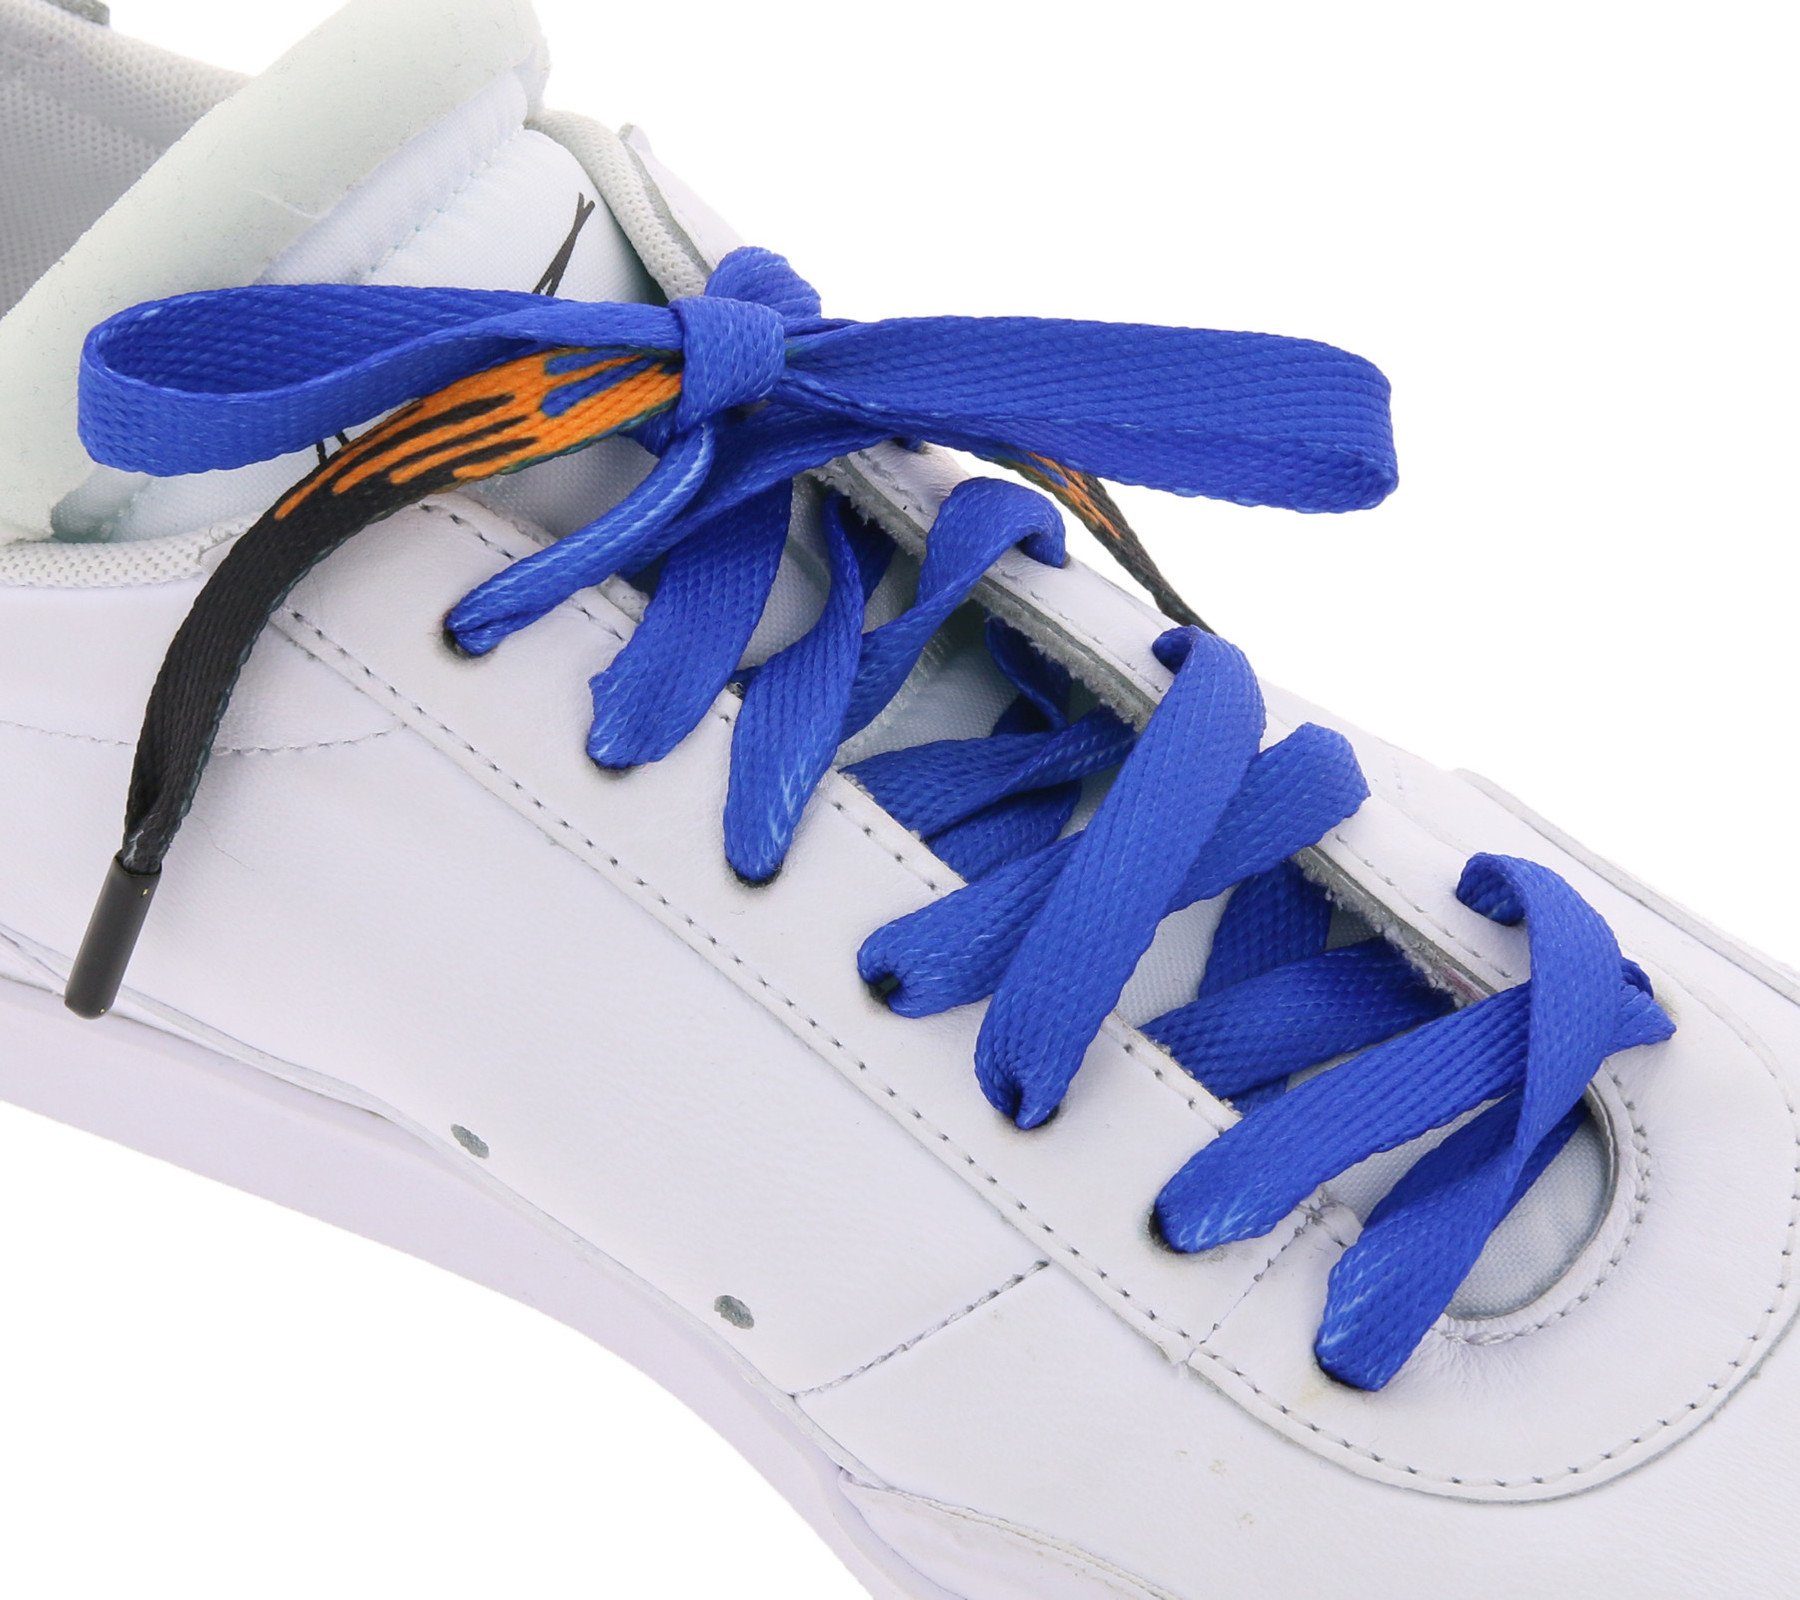 Schnürbänder trendige Tubelaces Schuhe Schnürsenkel TubeLaces Navy/Schwarz/Orange Schuhbänder Schnürsenkel